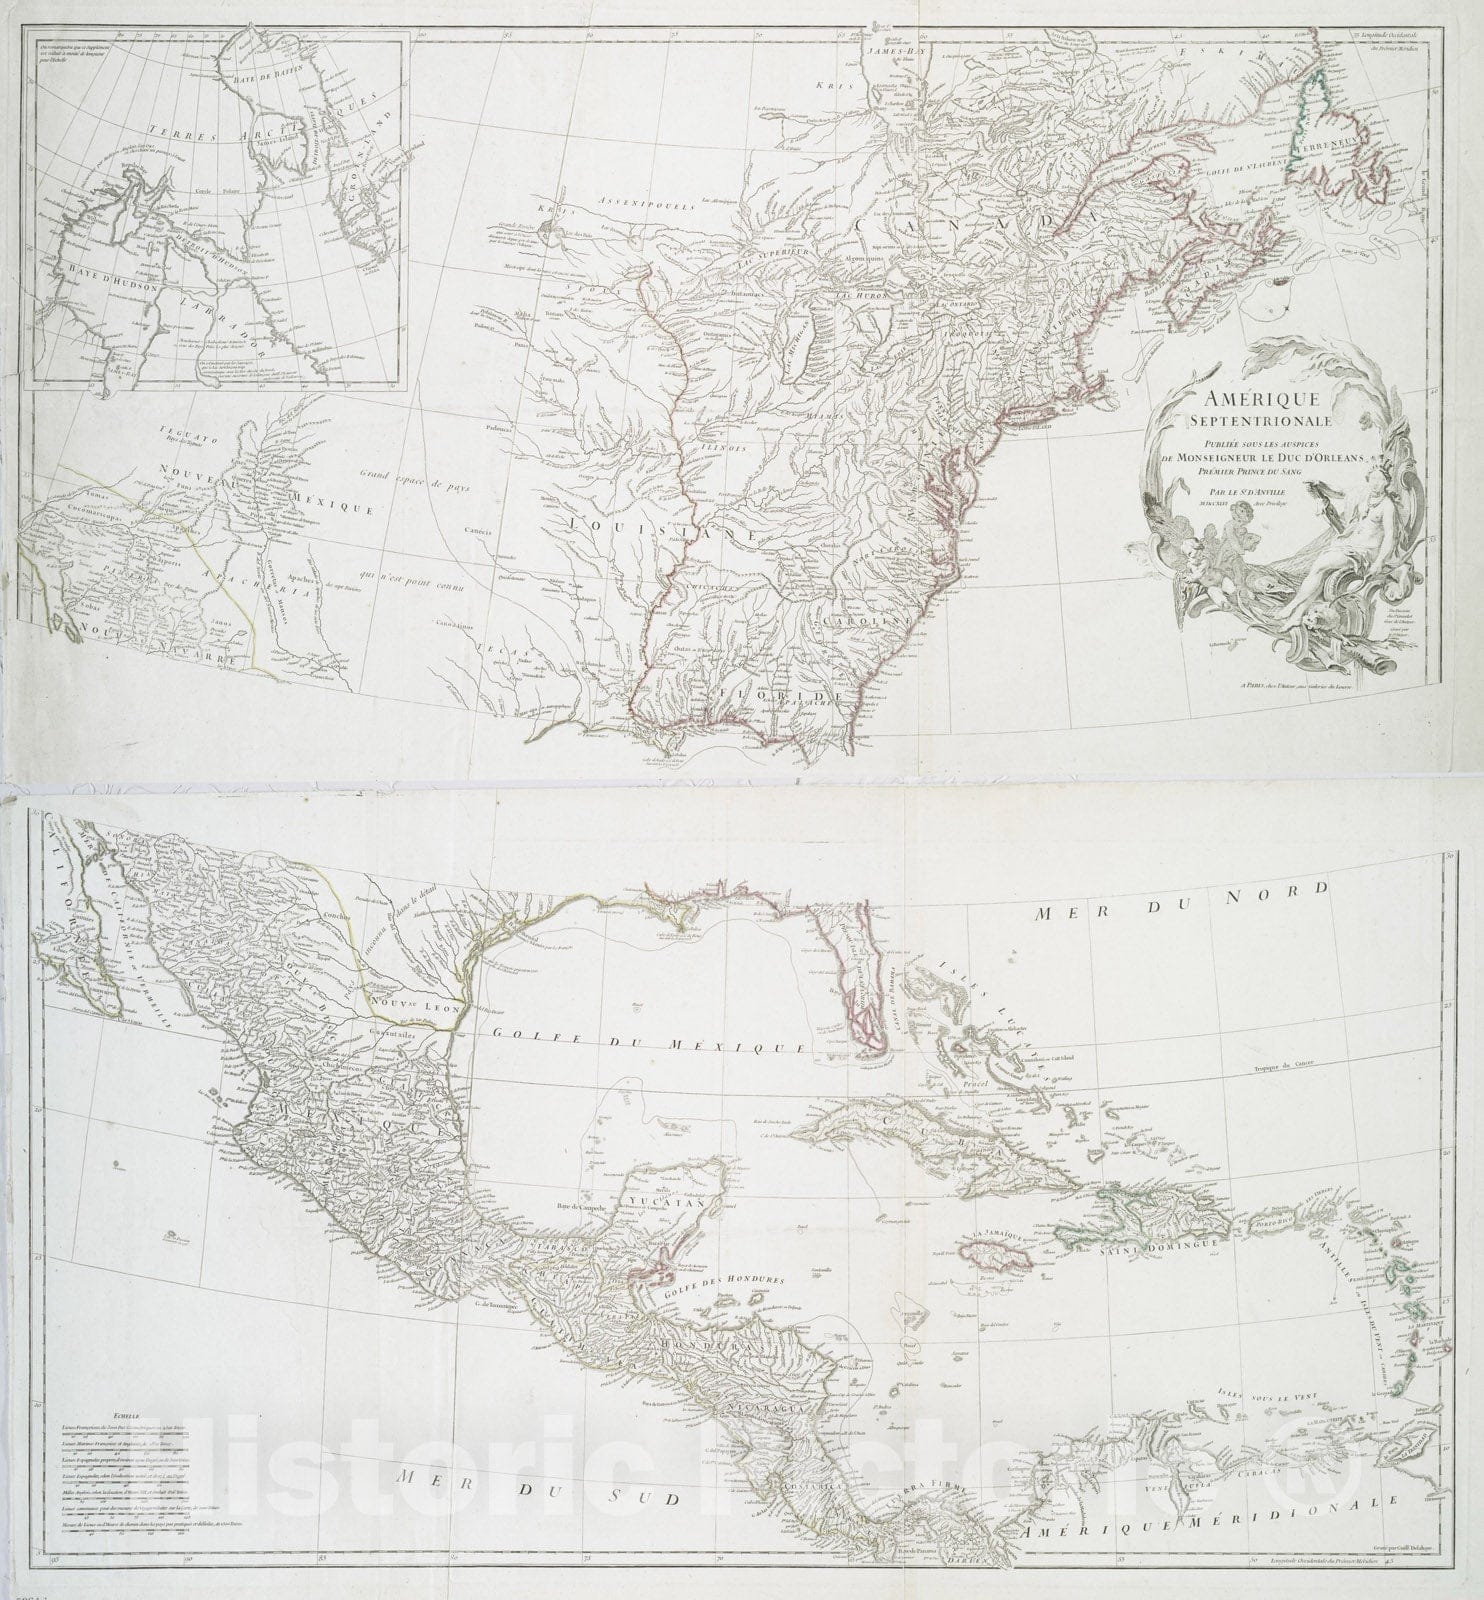 Historical Map, 1746 Amerique Septentrionale publiee Sous les Auspices de Monseigneur le Duc d'Orleans Premier Prince du sang, Vintage Wall Art